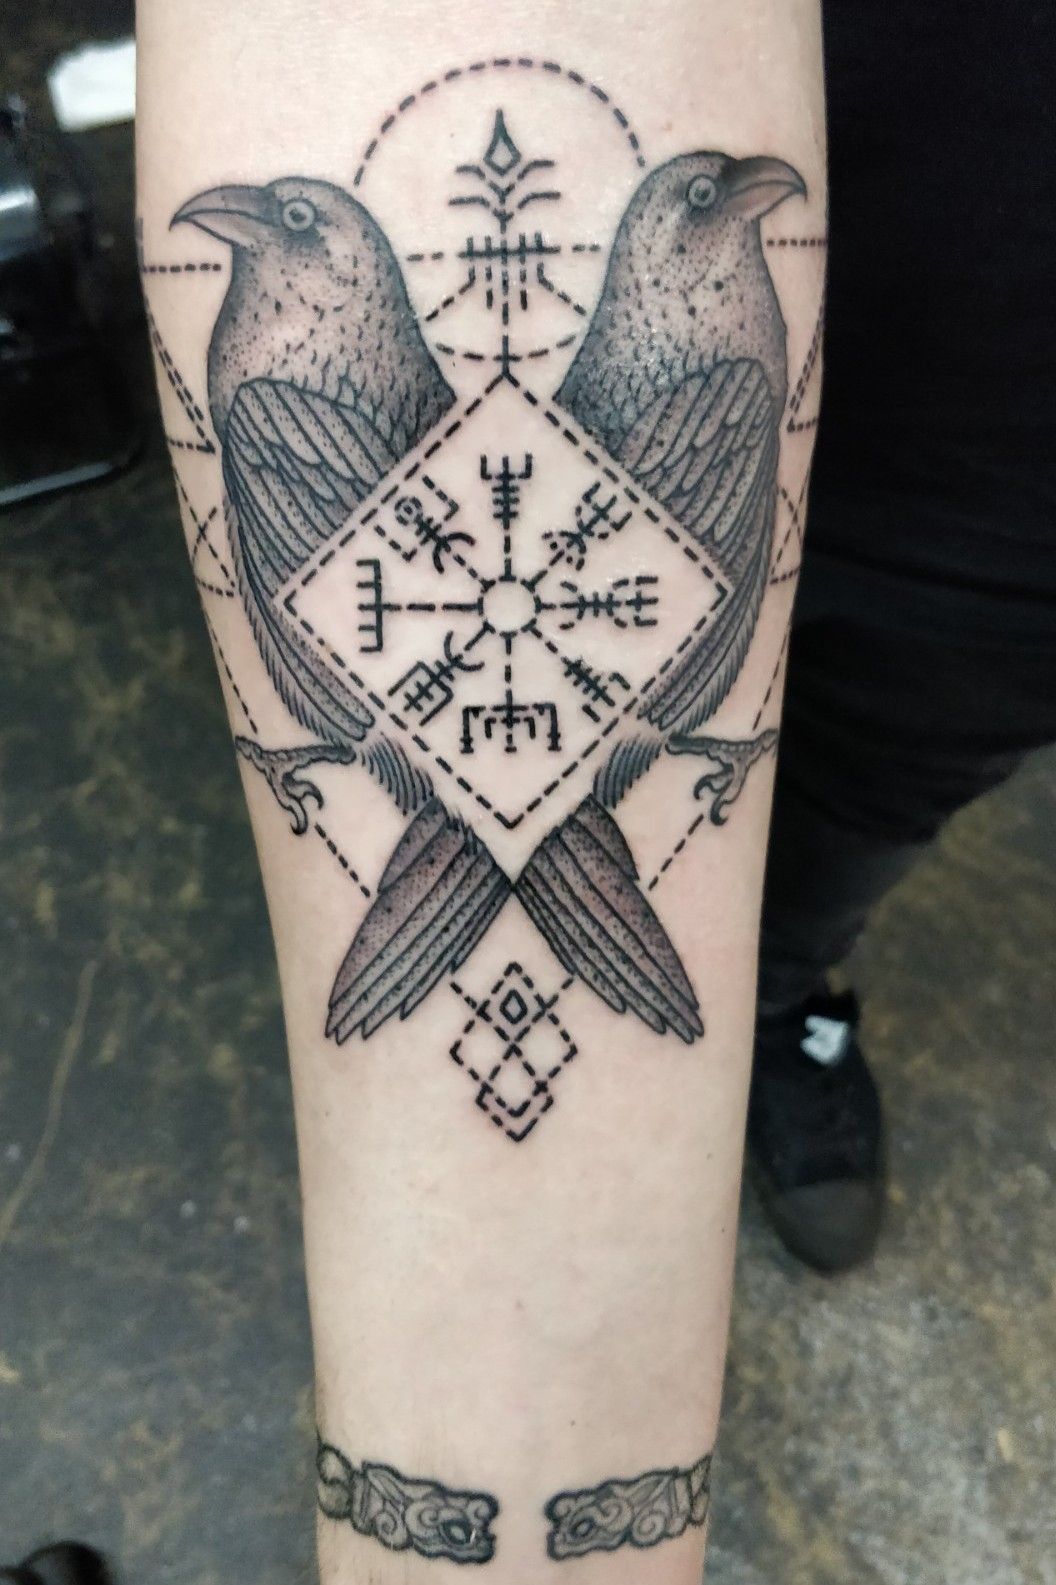 16 Best Hugin Munin Tattoo ideas  raven tattoo norse tattoo viking  tattoos